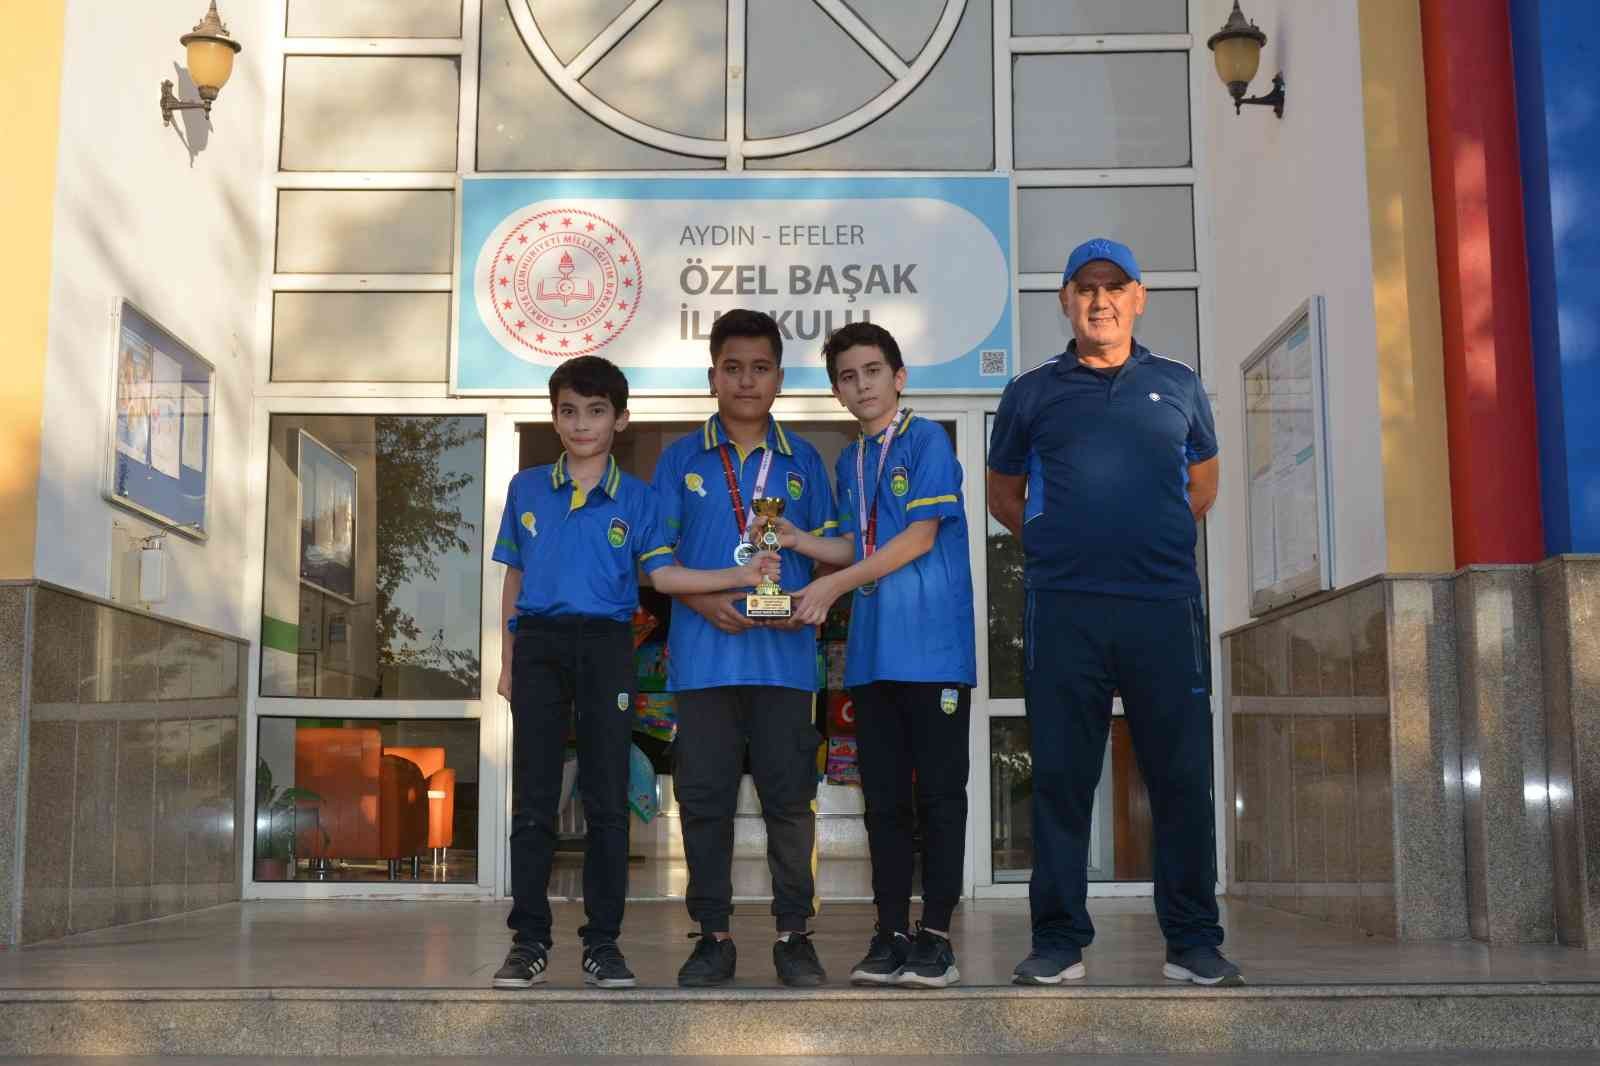 Başak Koleji, masa tenisinde bölge ikincisi oldu #aydin